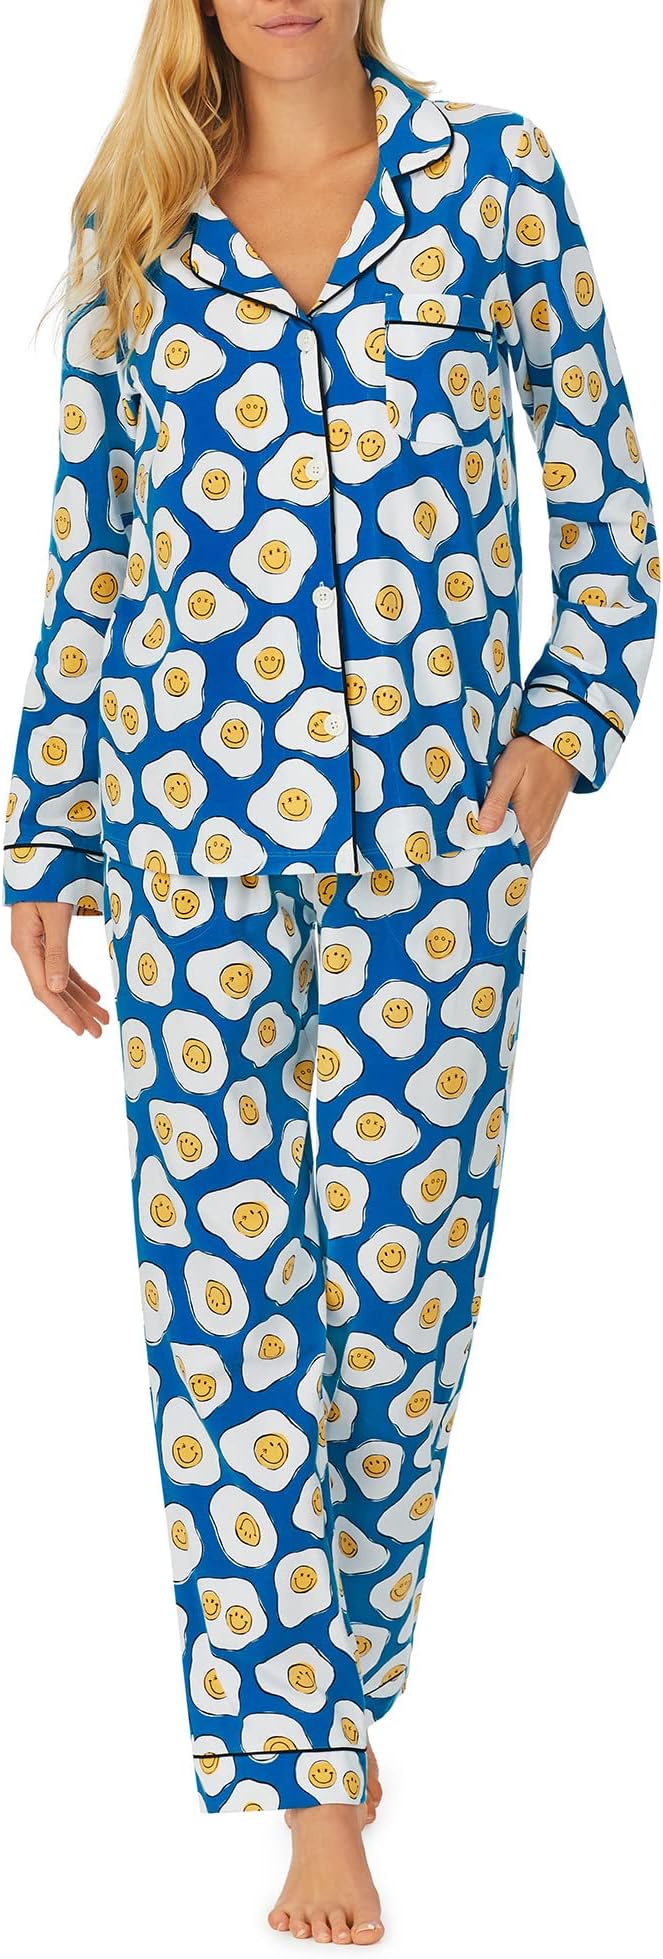 Zappos Print Lab: классический пижамный комплект с длинными рукавами Sunny Side Up Bedhead PJs, цвет Sunny Side Up sunny side up